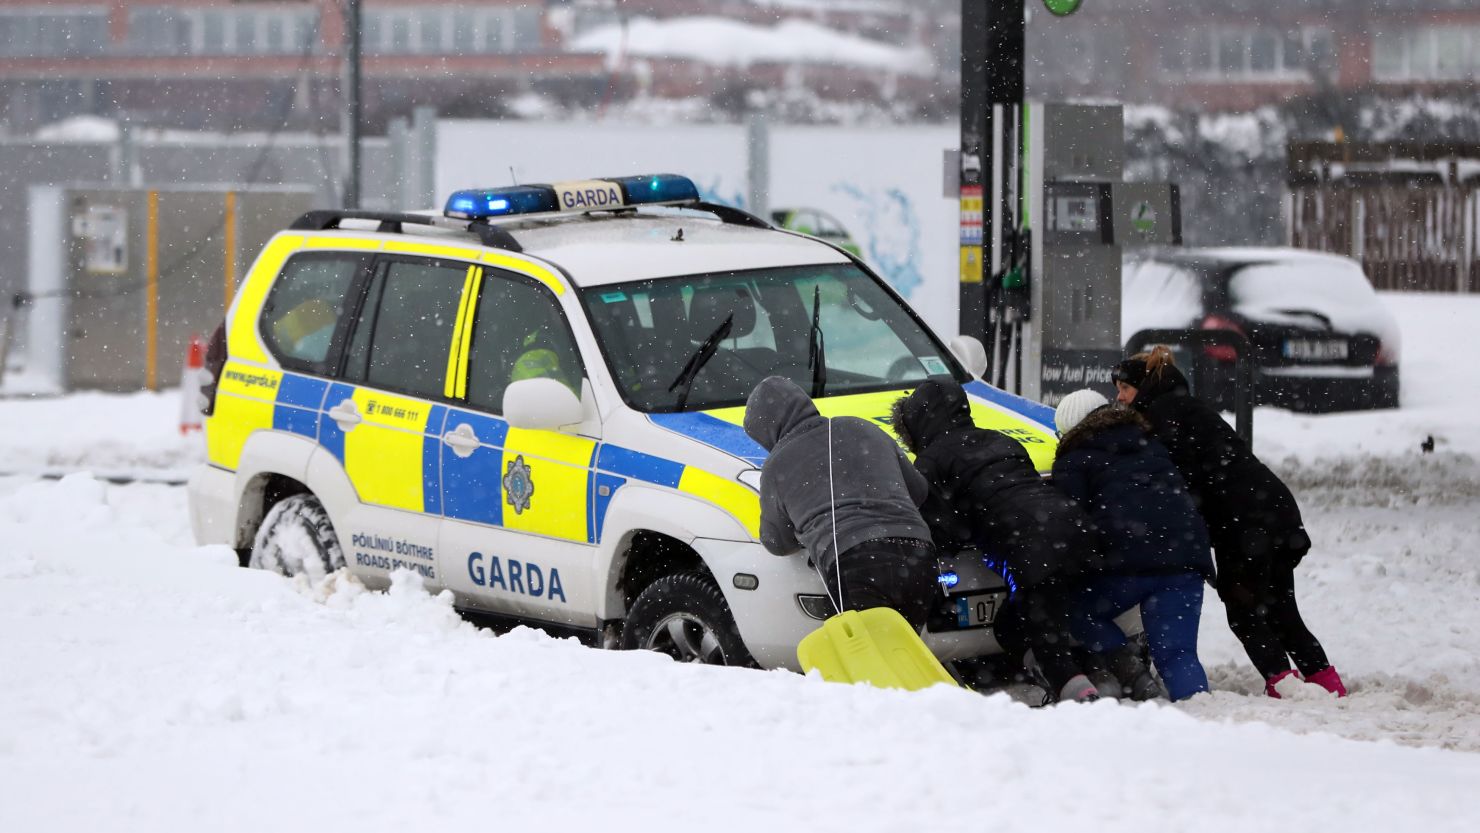 People help push a stranded Garda police car amid the snowfall in Ireland's Dublin area.